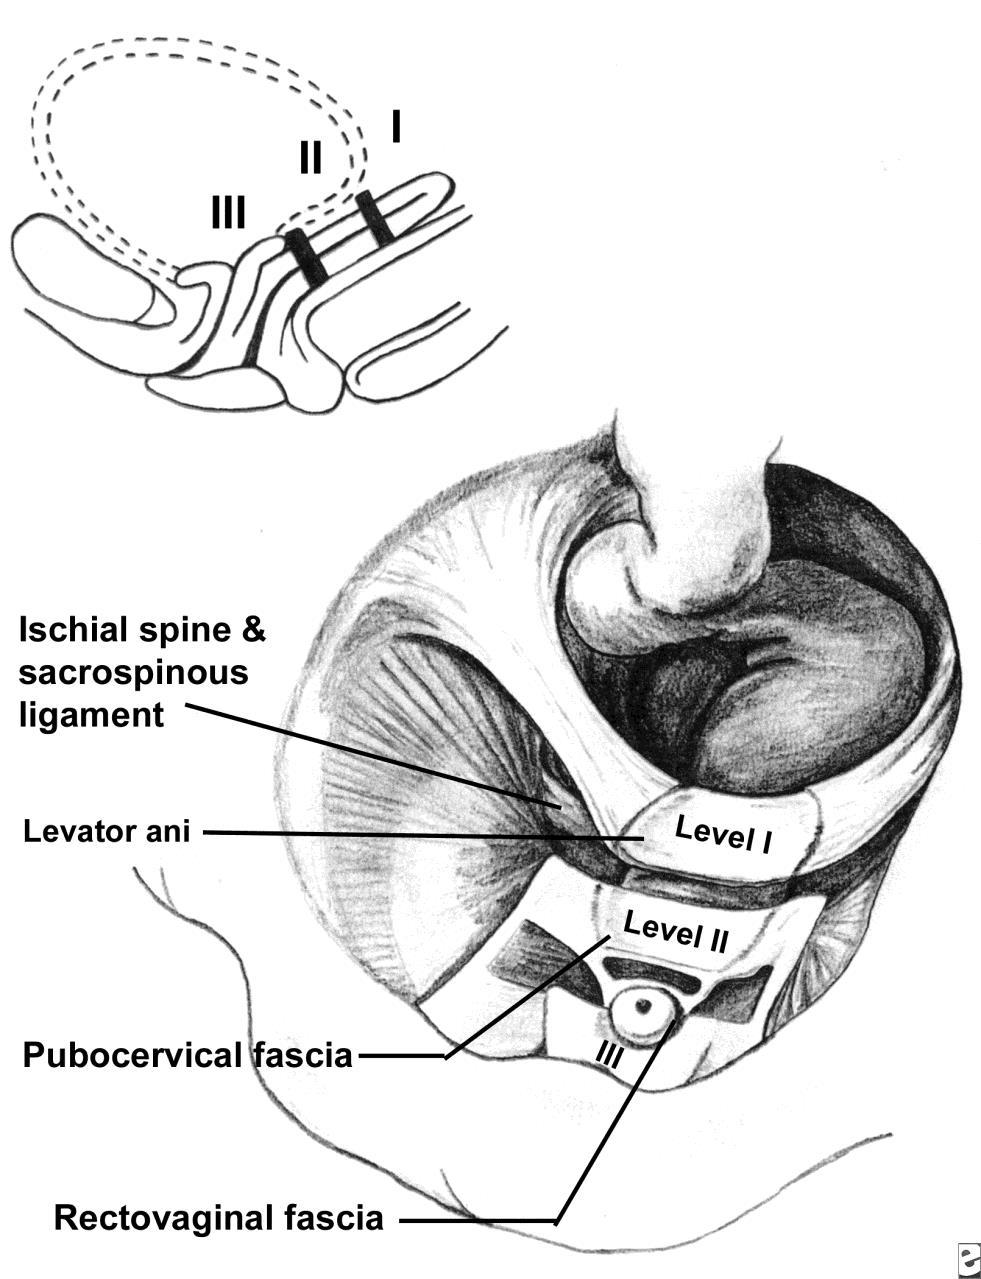 Level II - attachement Den mellersta delen av vagina får stöd från pubocervikala fascian och